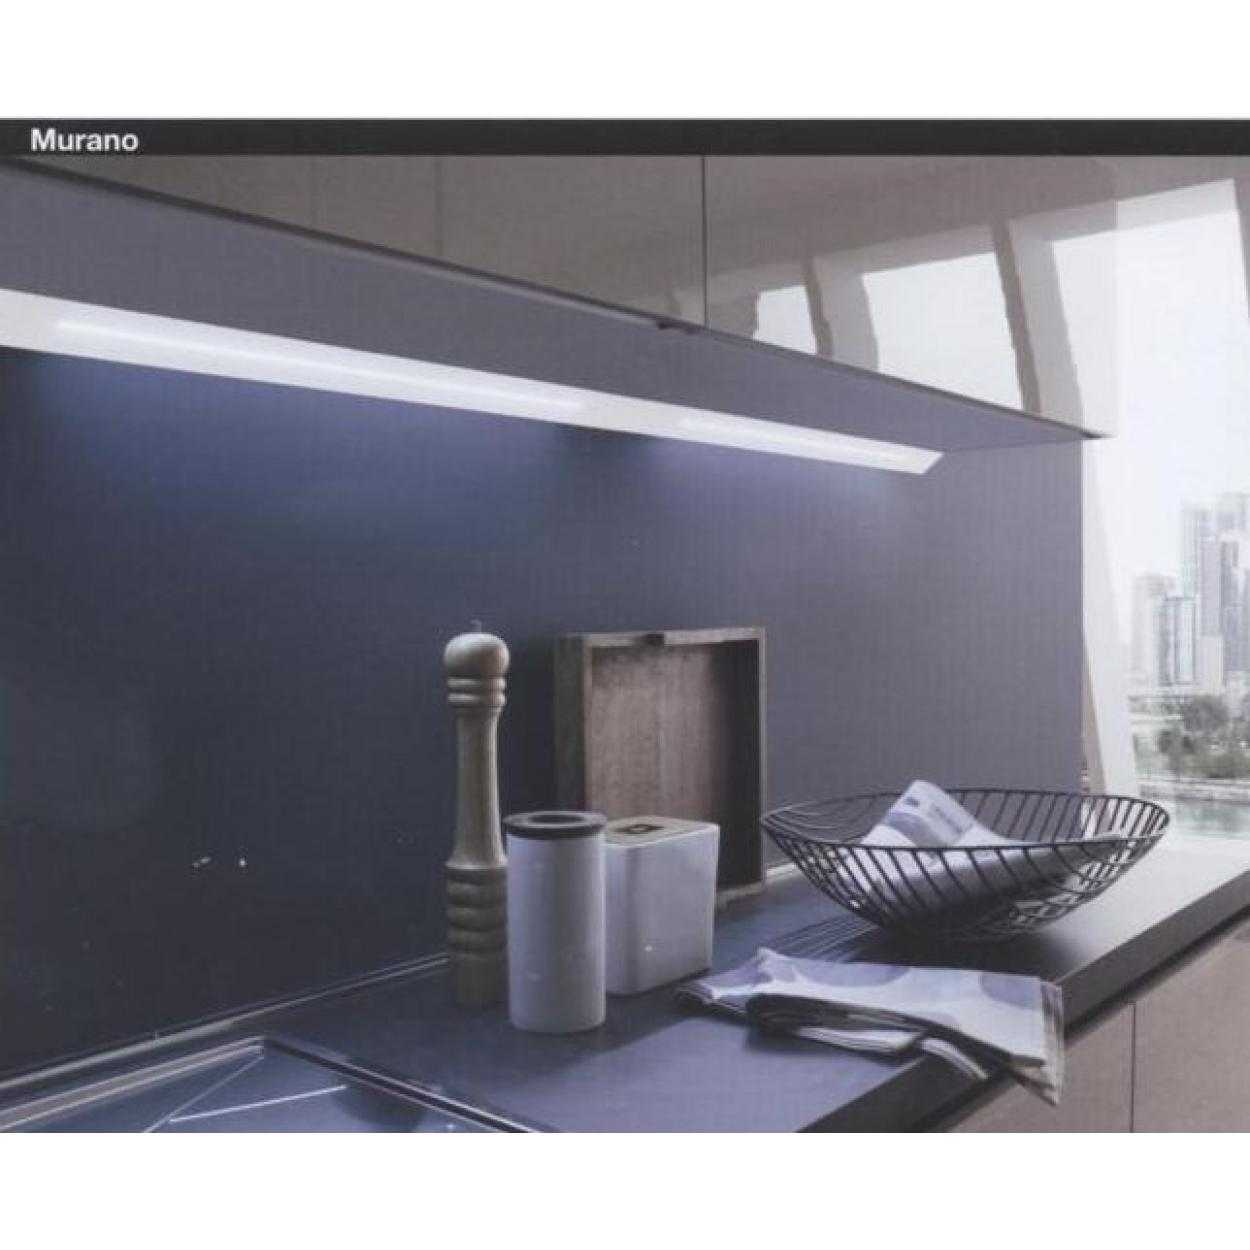 Подсветка рабочей зоны на кухне: принципы правильной организации освещения (86 фото + видео)